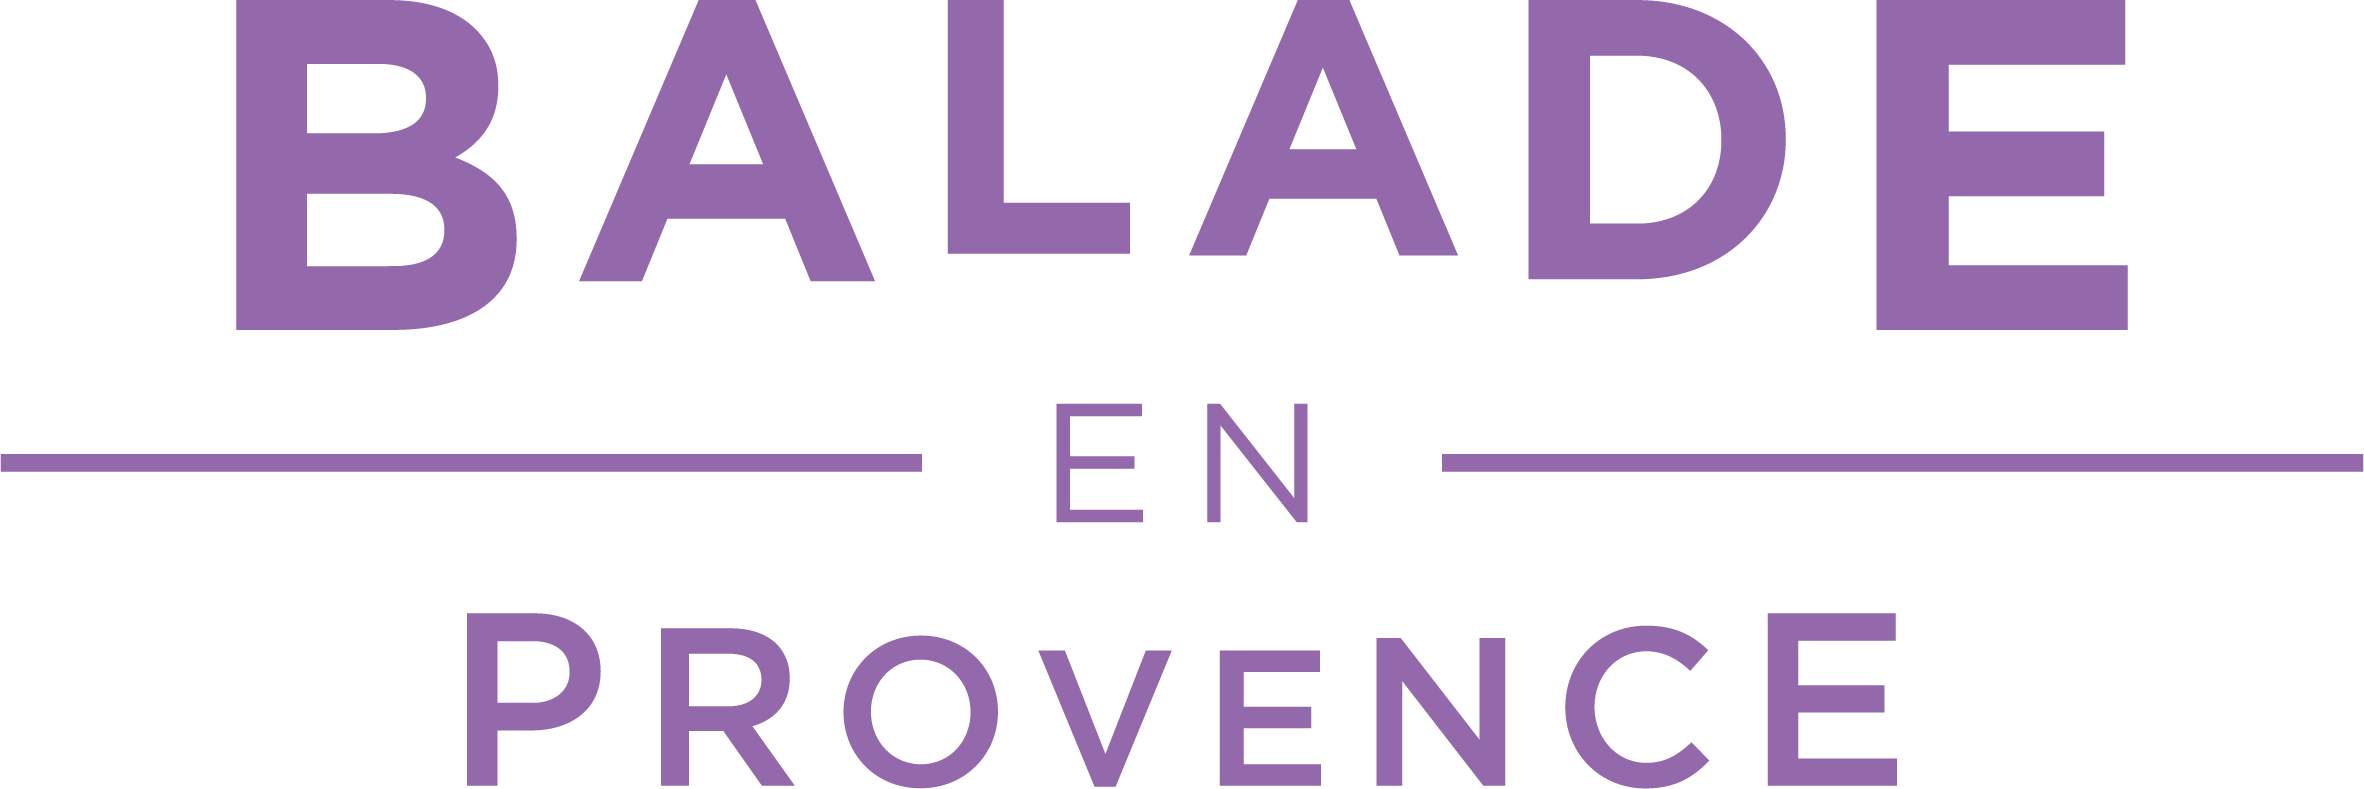 Balade en Provence Louvain-la-Neuve